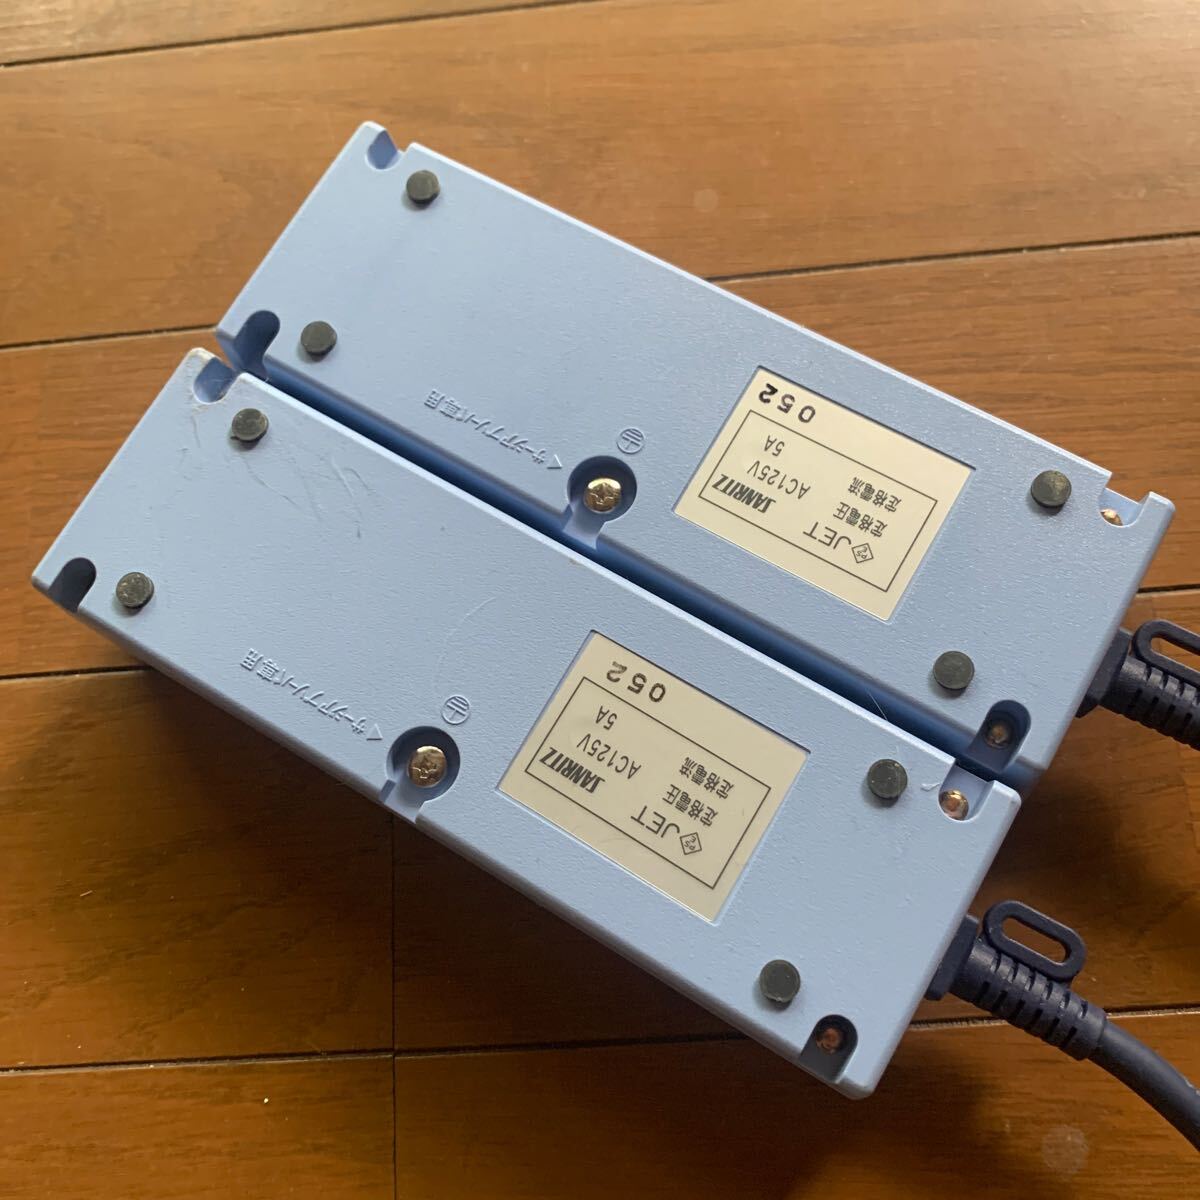 コトヴェール ノイズ・雷サージプロテクタ SFU-005-3C 電源 タップ コンセント ノイズフィルタ 3極コードタイプの画像3